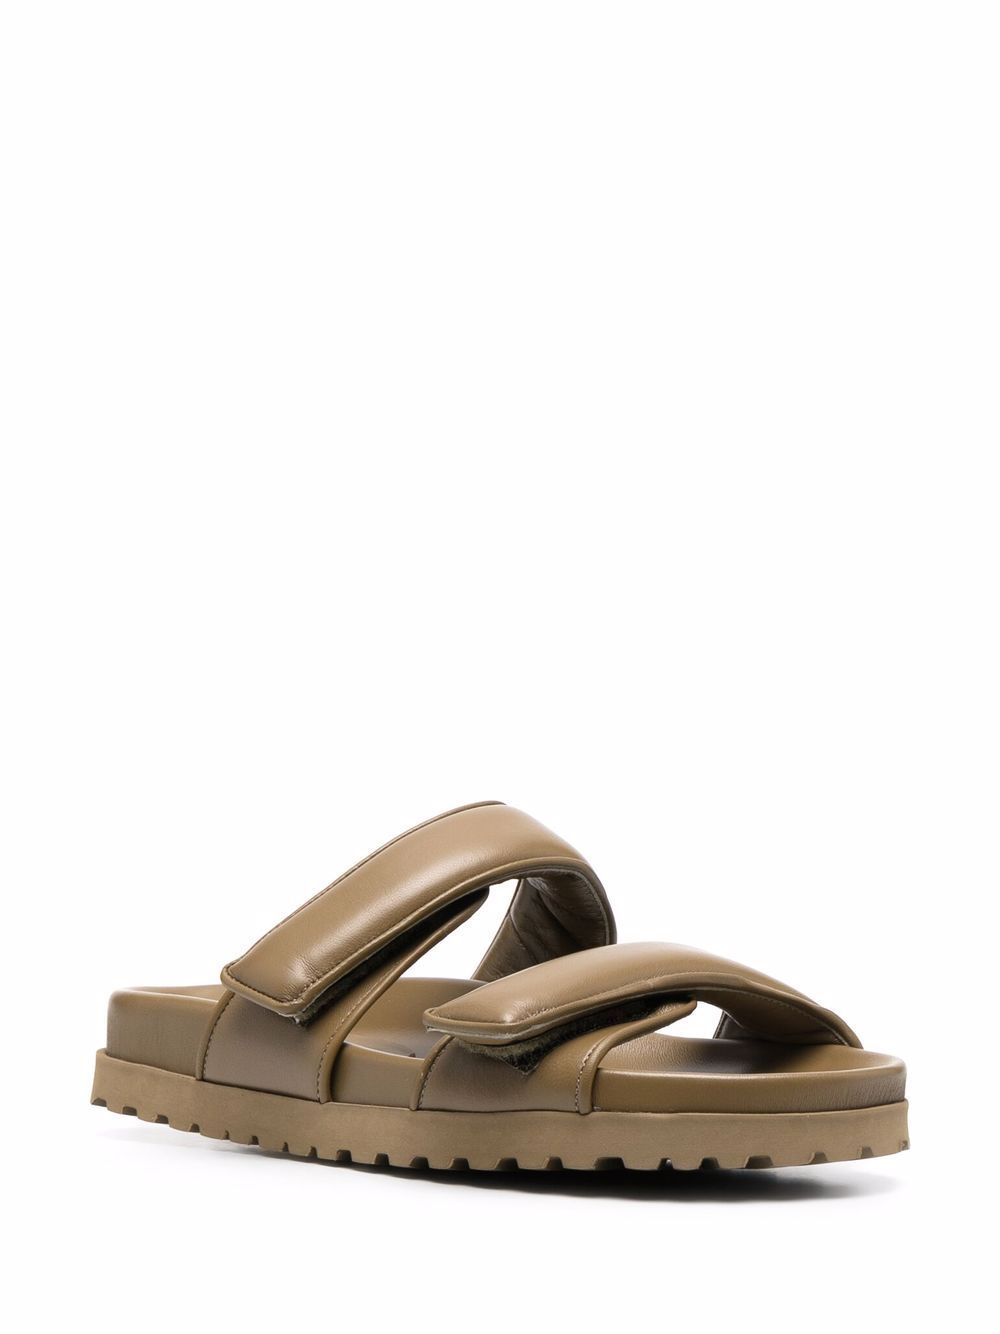 GIABORGHINI x Pernille Teisbaek touch-strap Flat Sandals - Farfetch | Farfetch Global